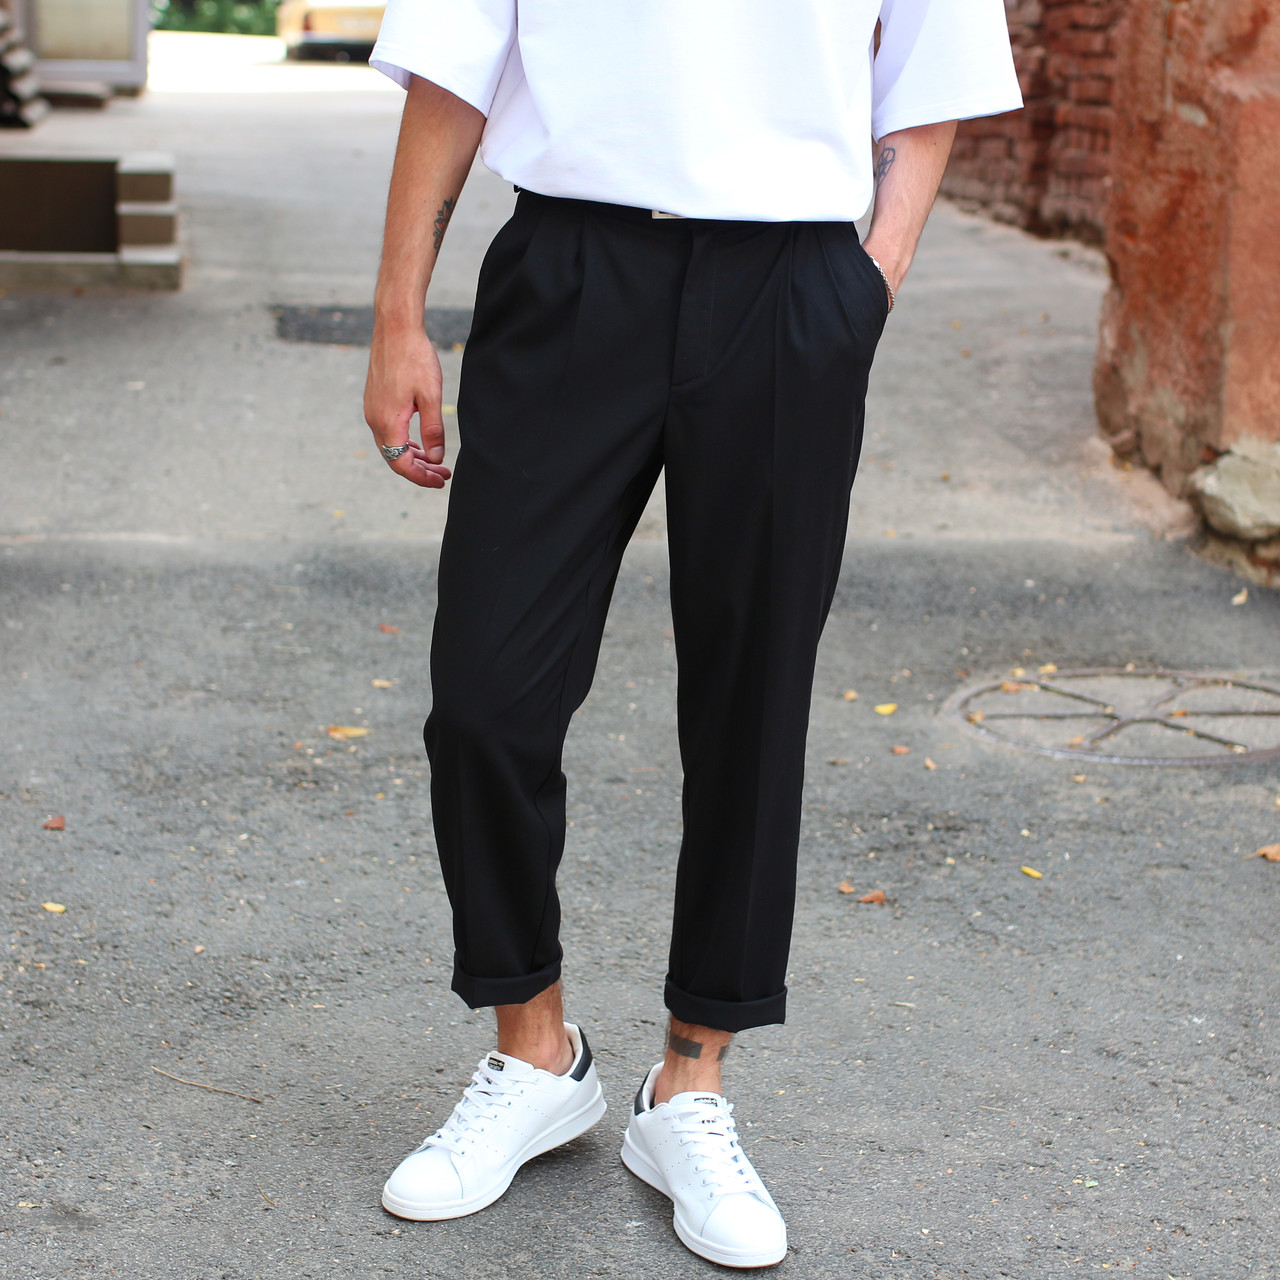 Чоловічі штани чоловічі бренд ТУР модель Хадо (Hado) TURWEAR - Фото 5